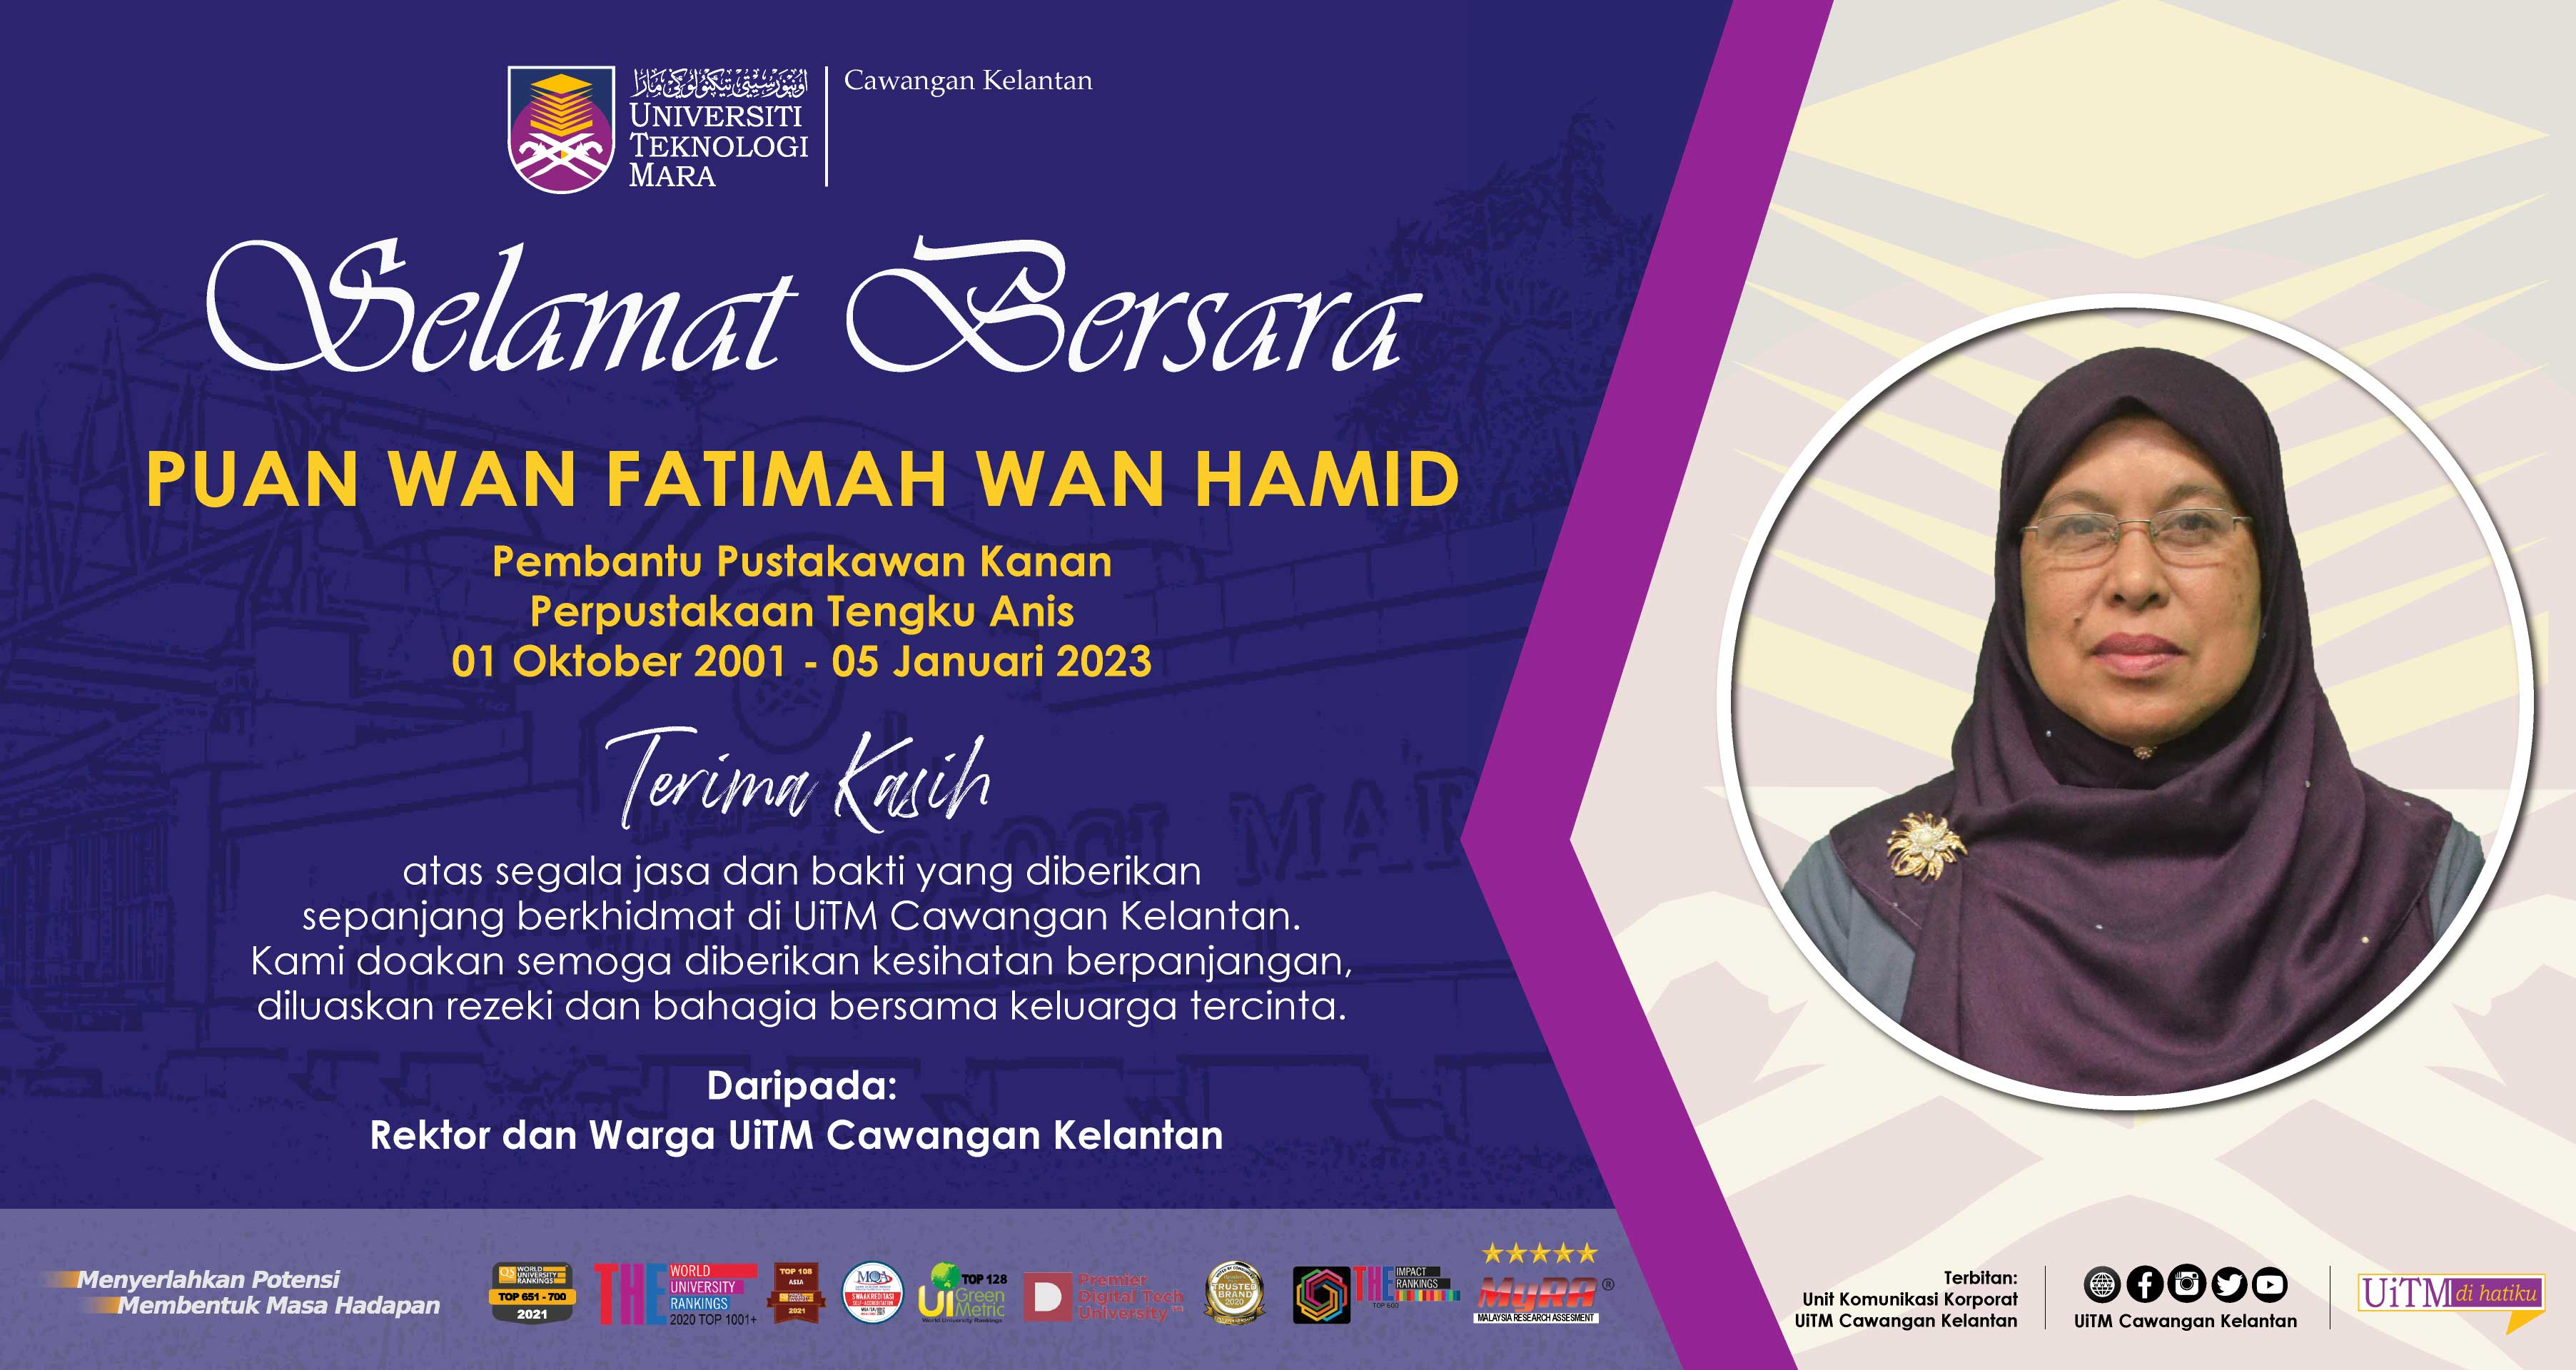 Selamat Bersara, Puan Wan Fatimah Wan Hamid, Pembantu Pustakawan Kanan